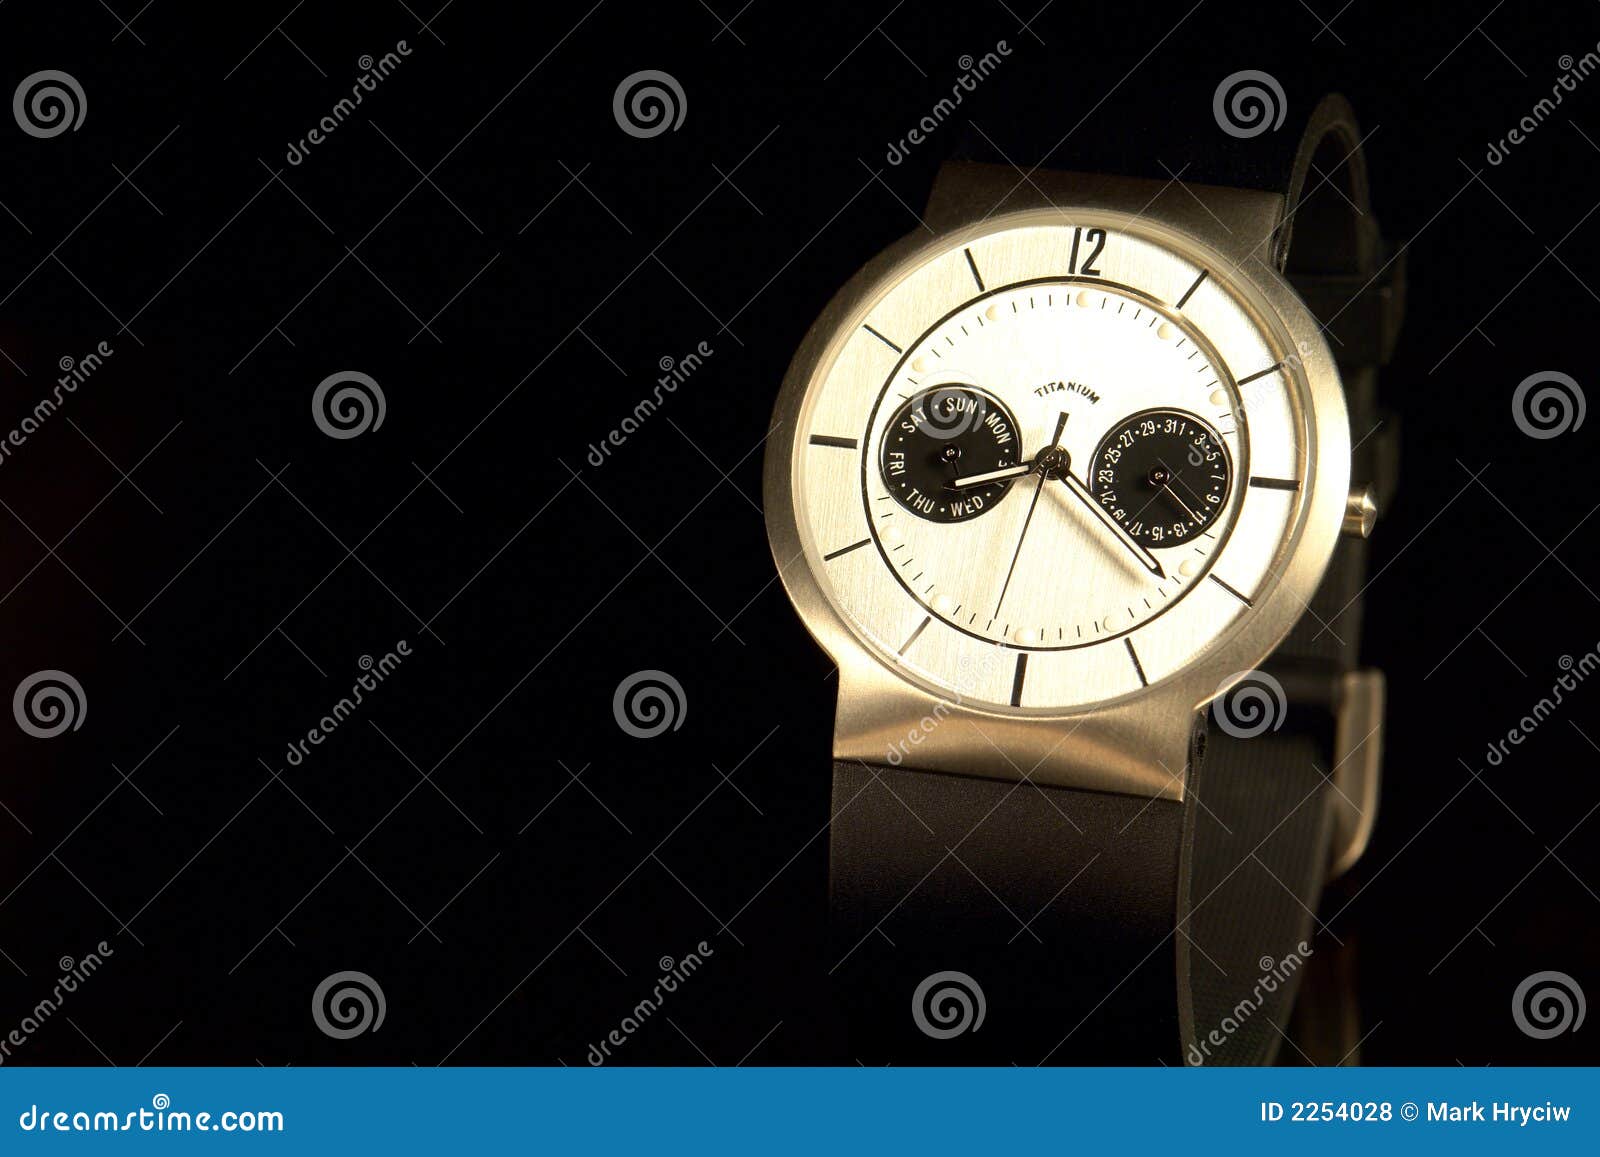 mens titanium watch